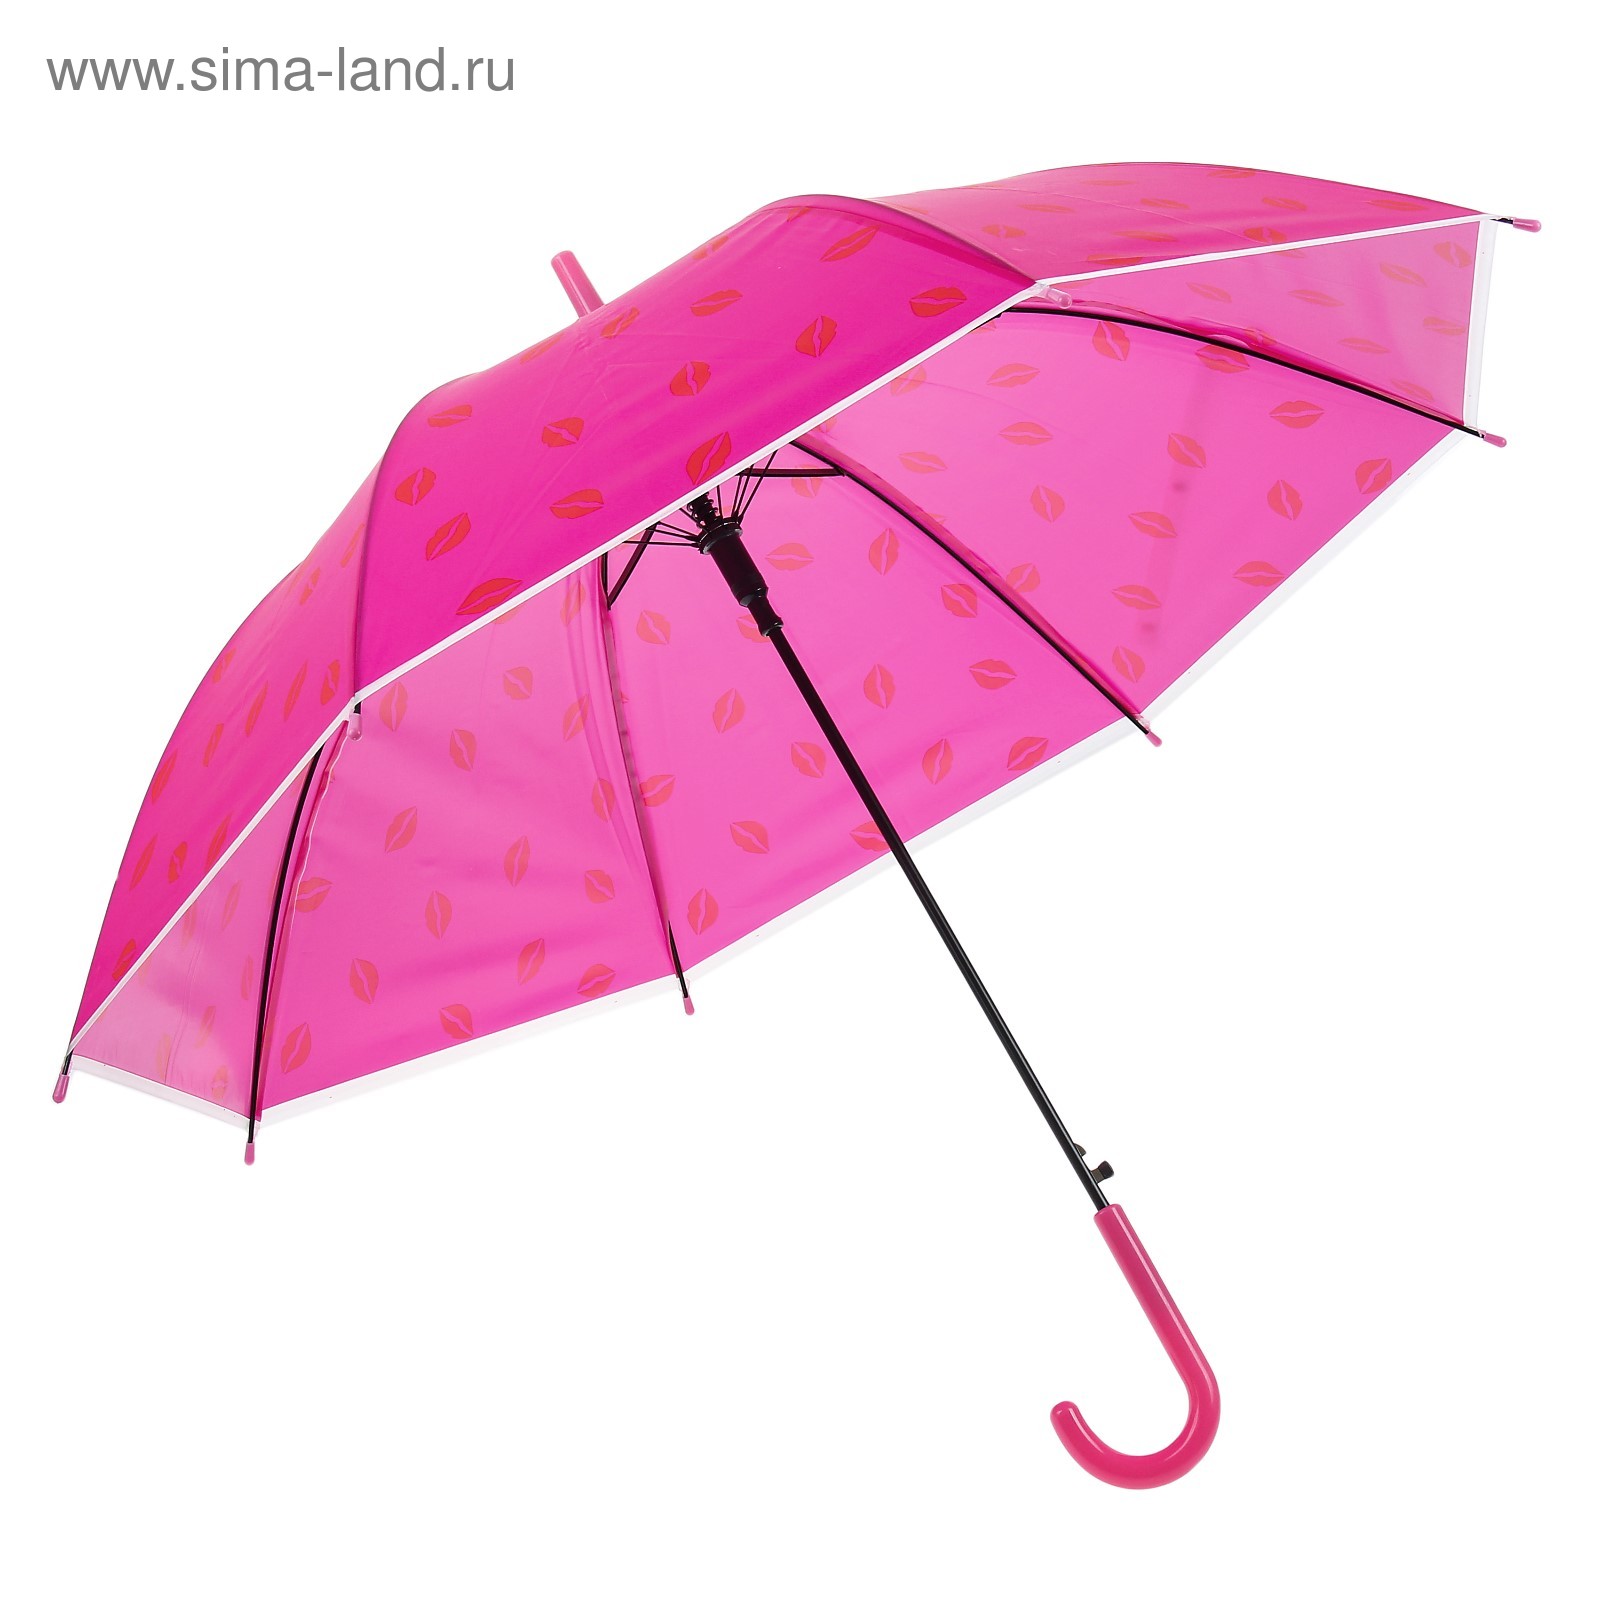 Зонтик брать. Детские зонты. Зонтик для детей. Девочка с зонтиком. Малыш с зонтиком.